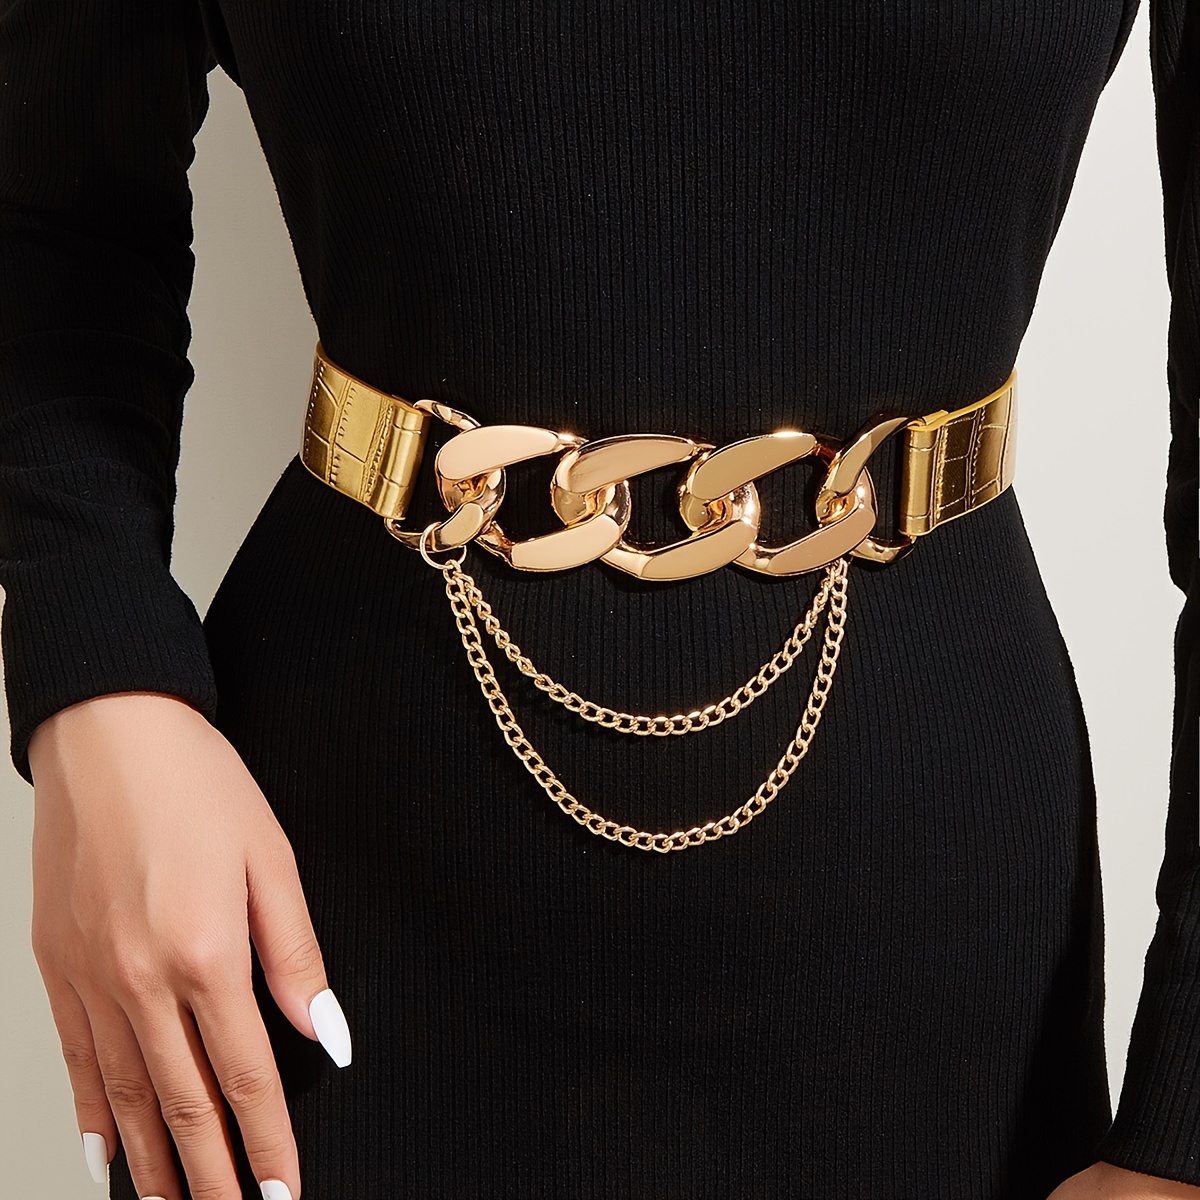 Women's Belts, Leather, waist & elastic belts